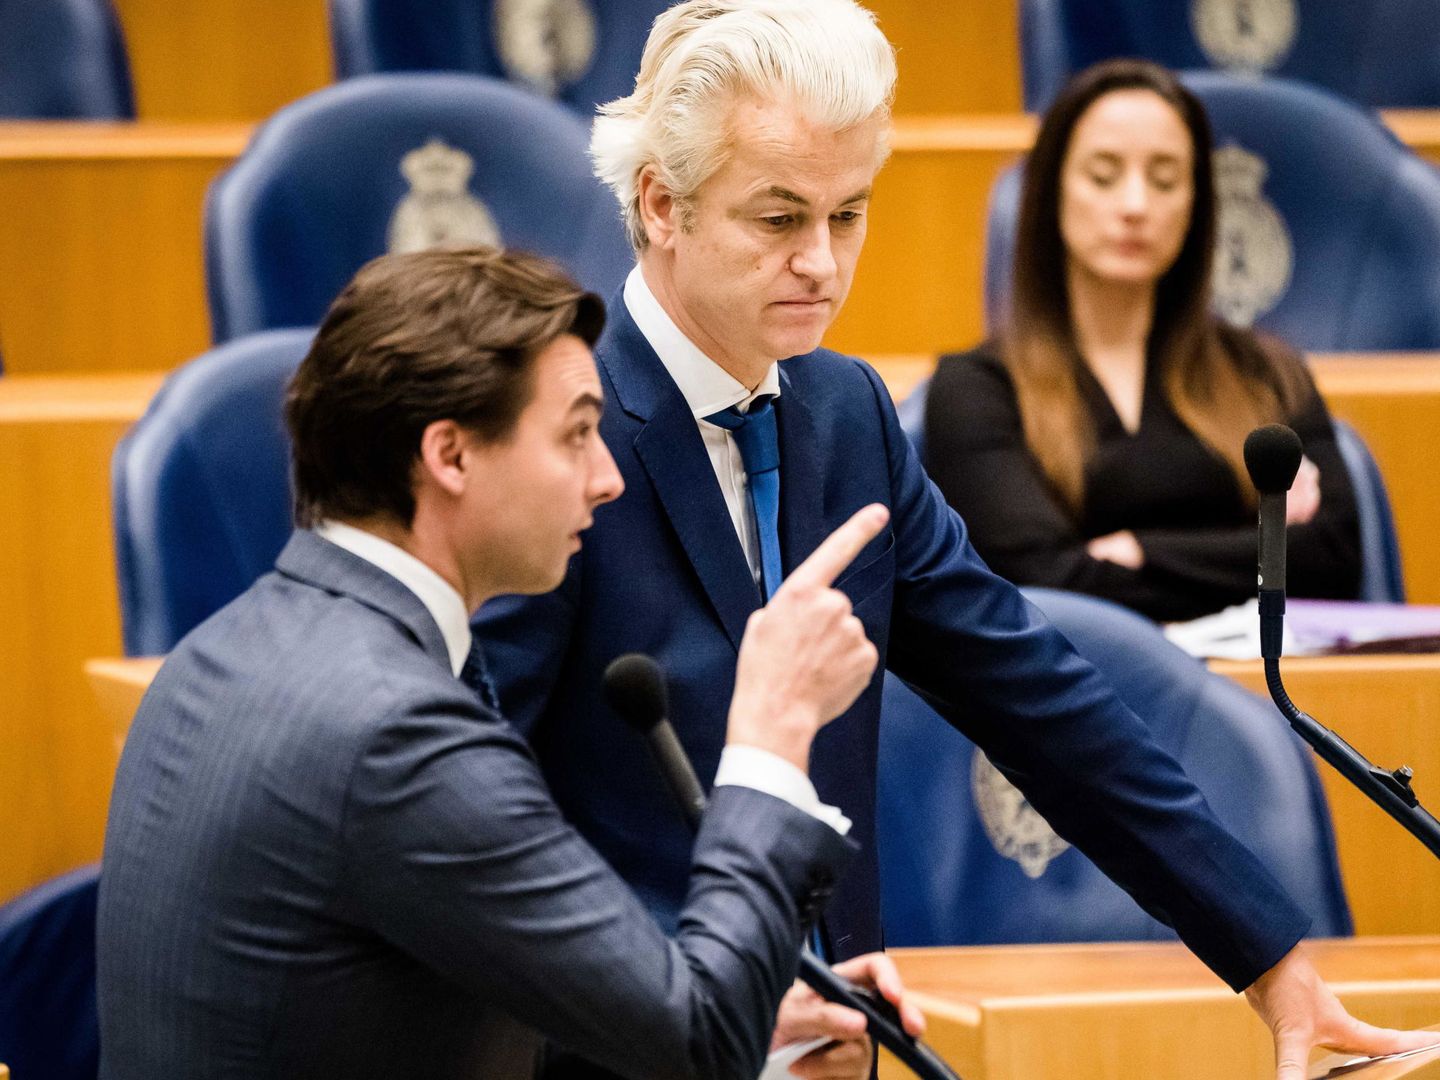 Baudet (i) y Wilders participan en un debate parlamentario sobre la respuesta a la crisis sanitaria.